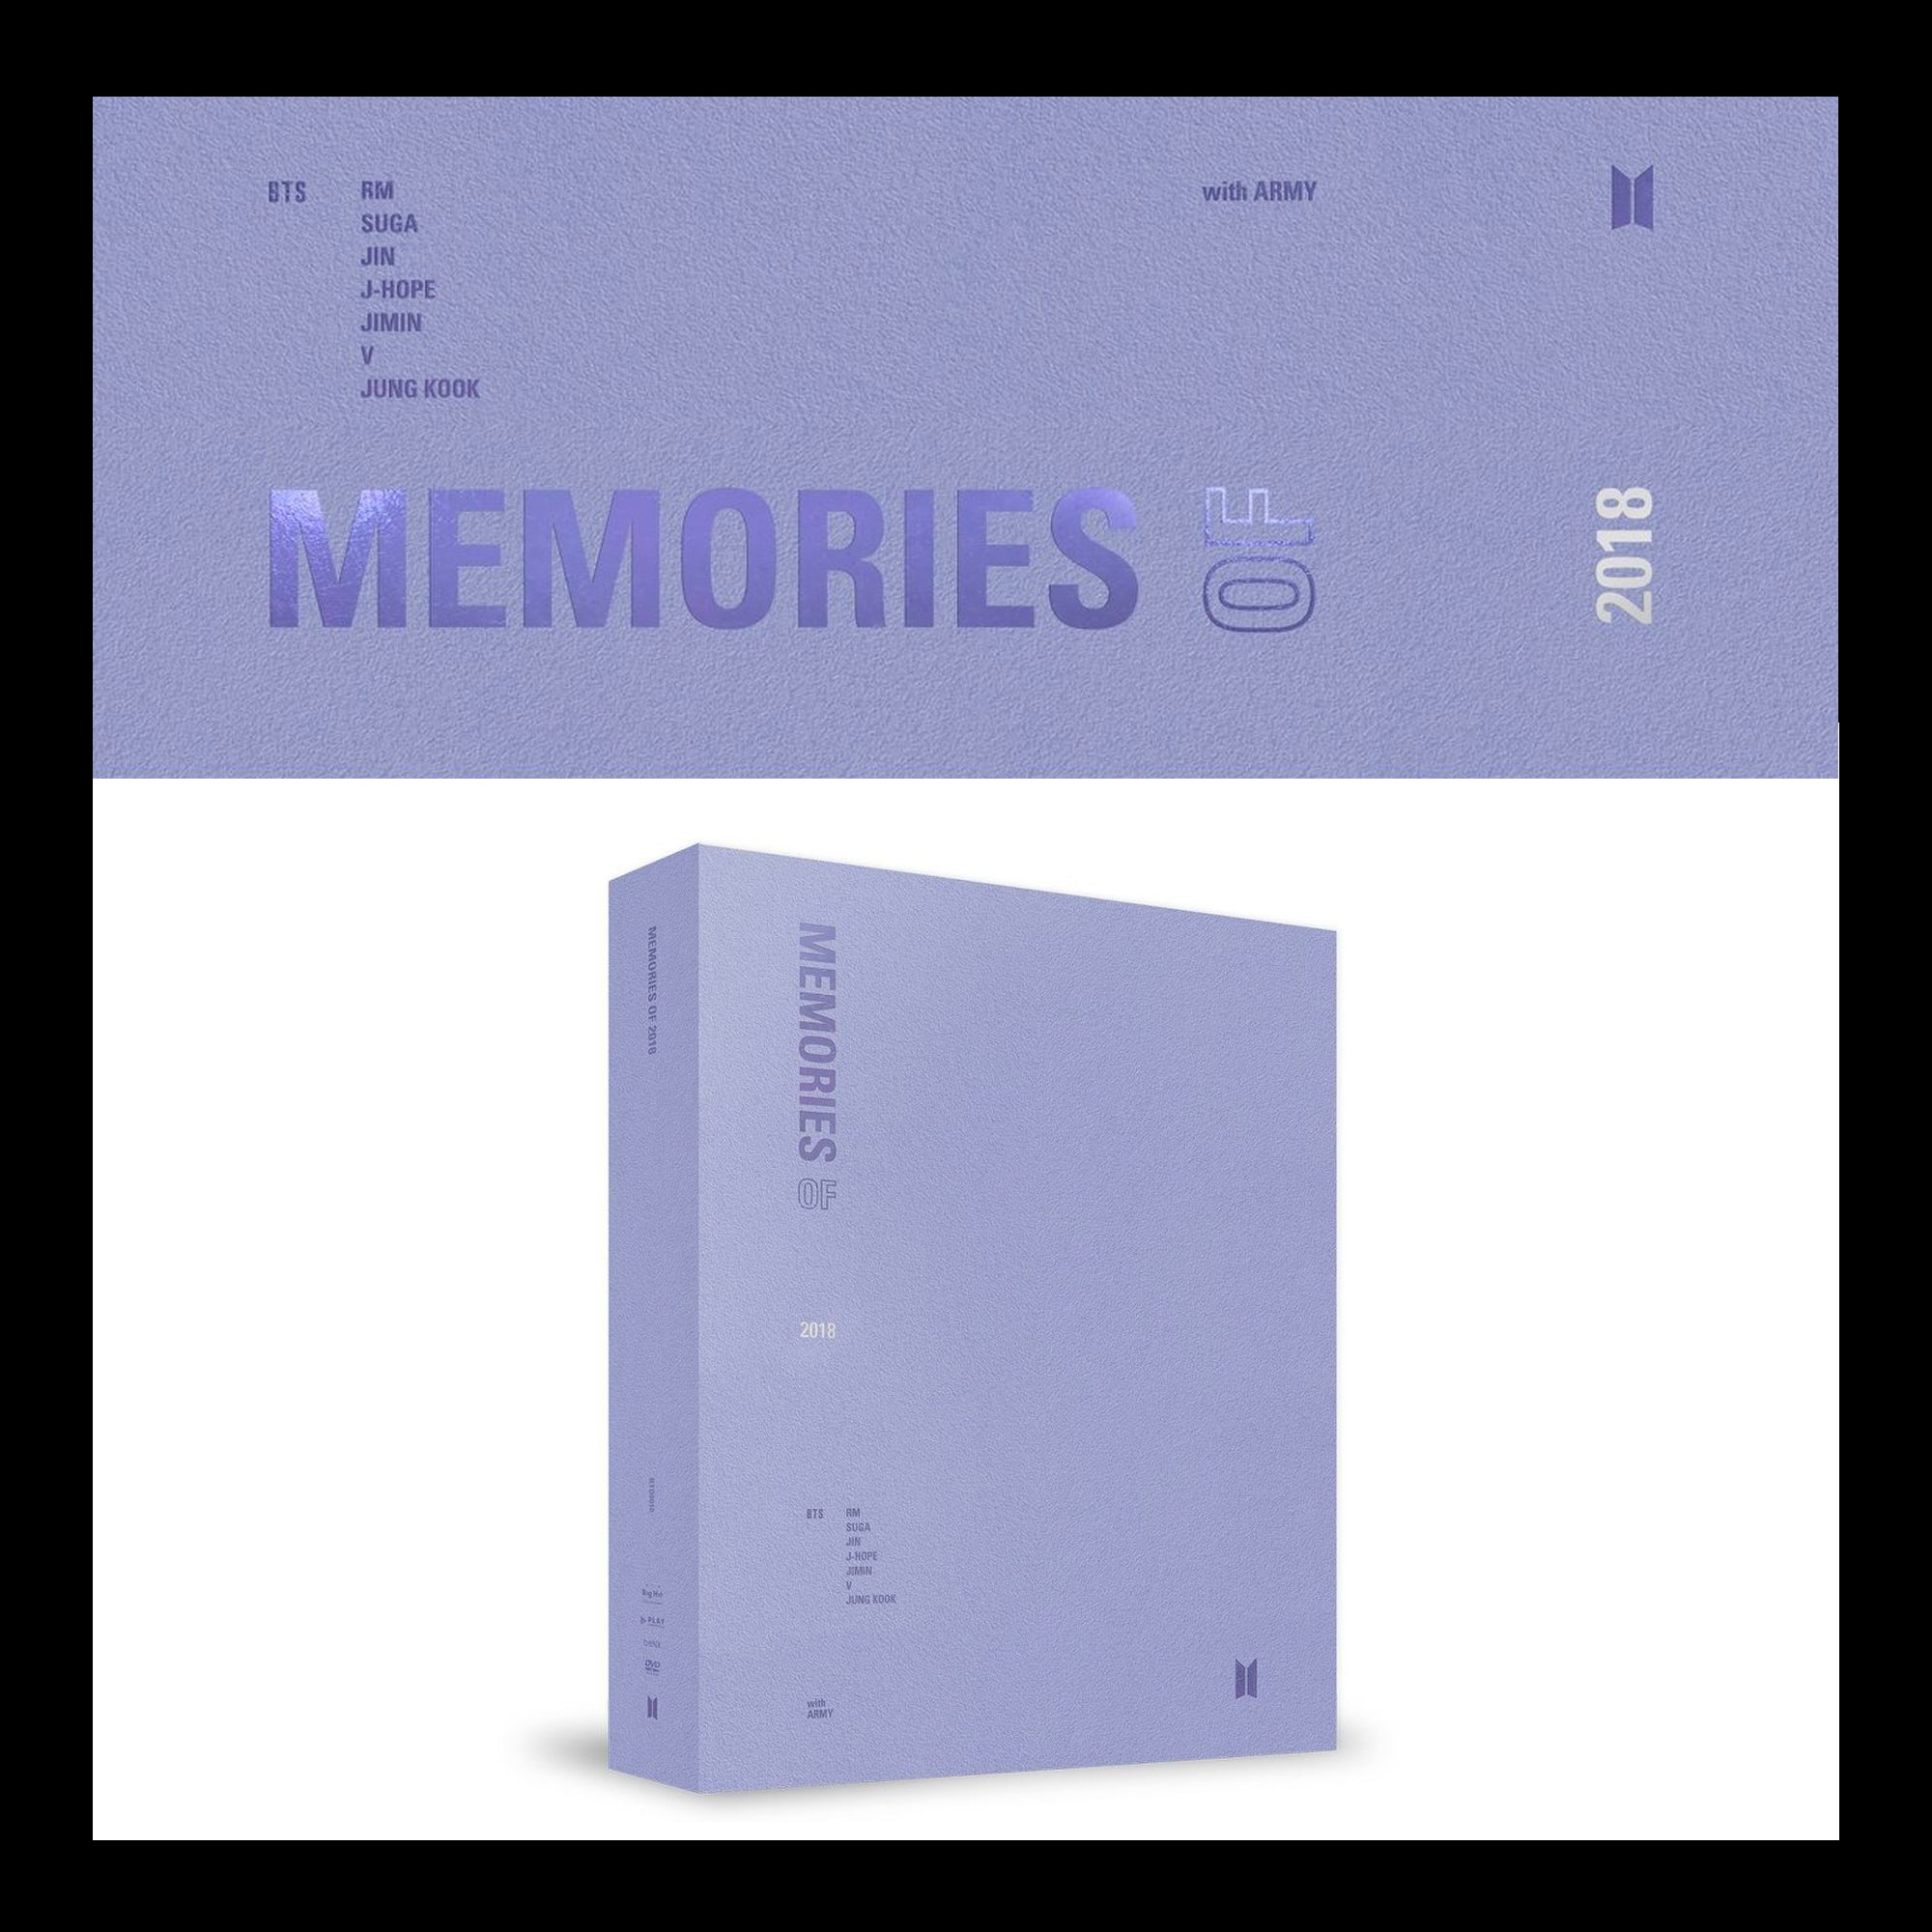 BTS MEMORIES OF 2018 DVD